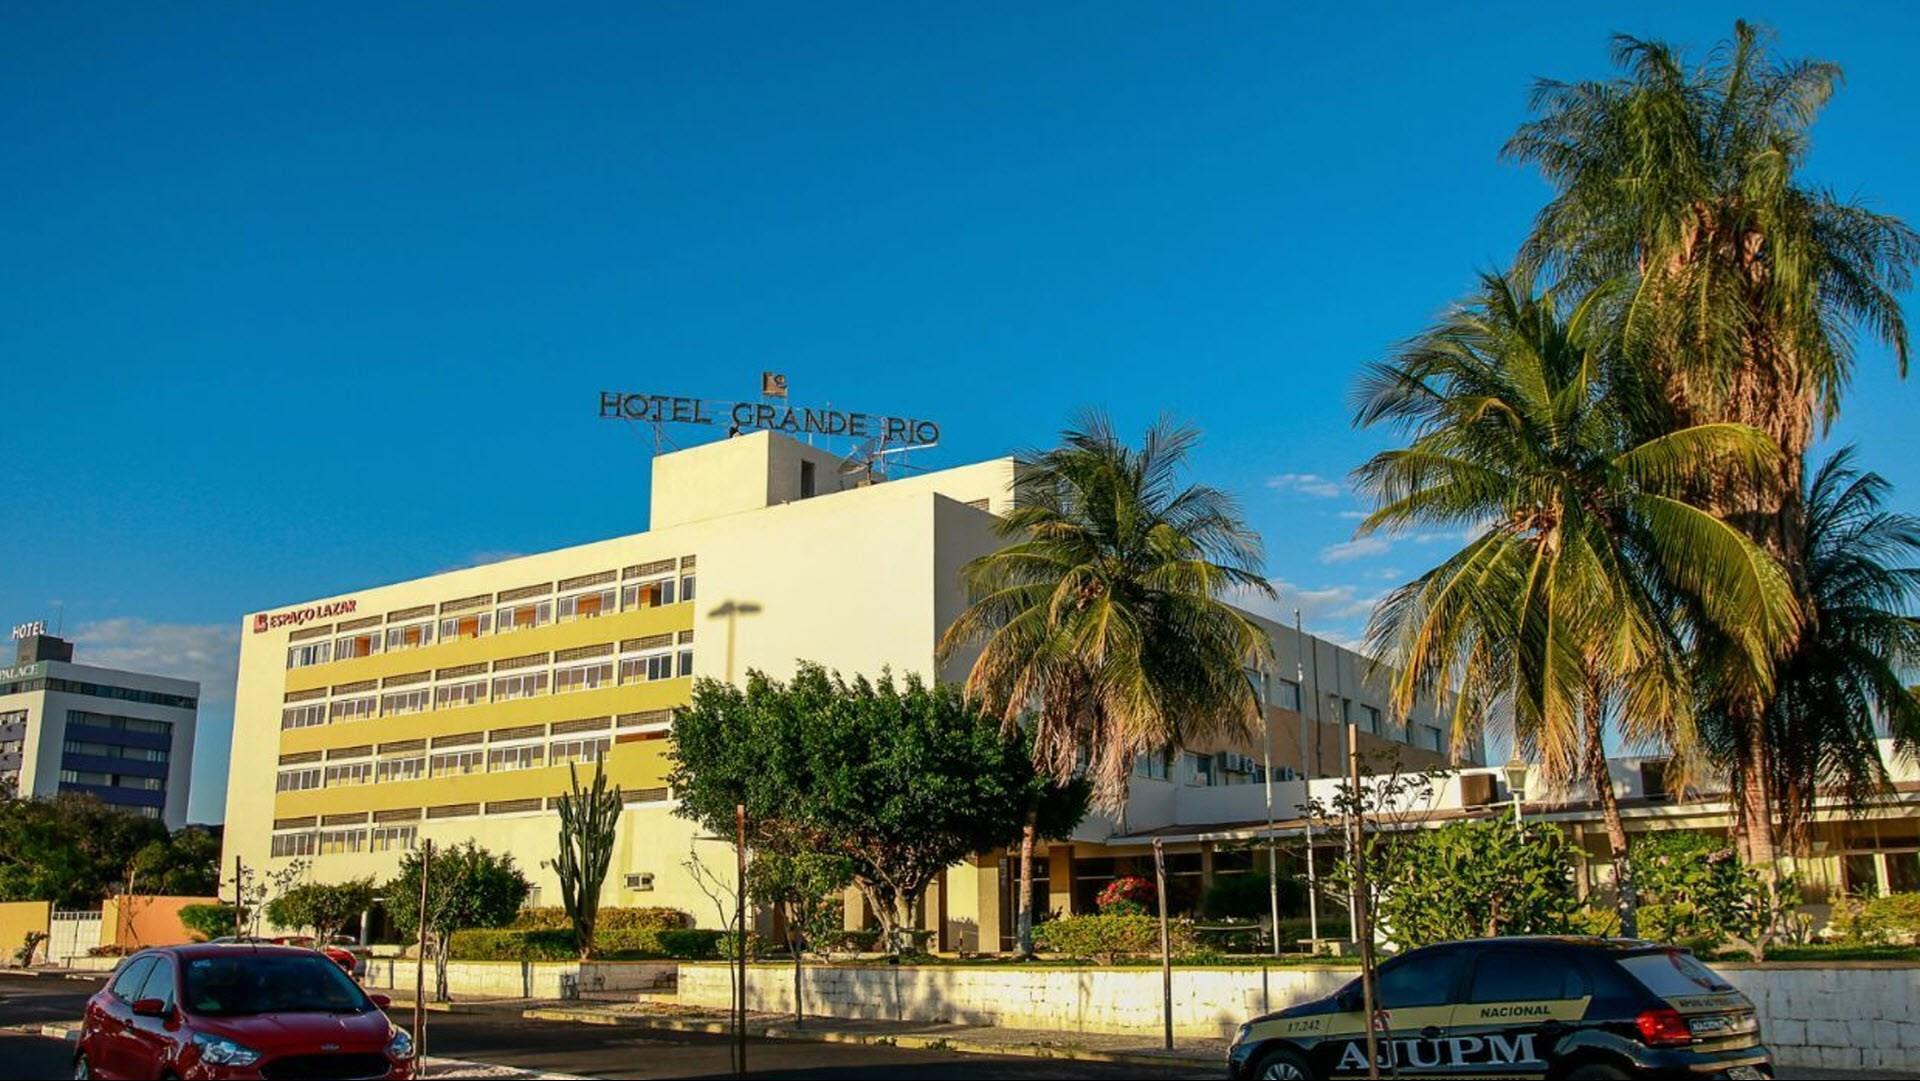 Hotel Do Grande Rio in Petrolina, BR